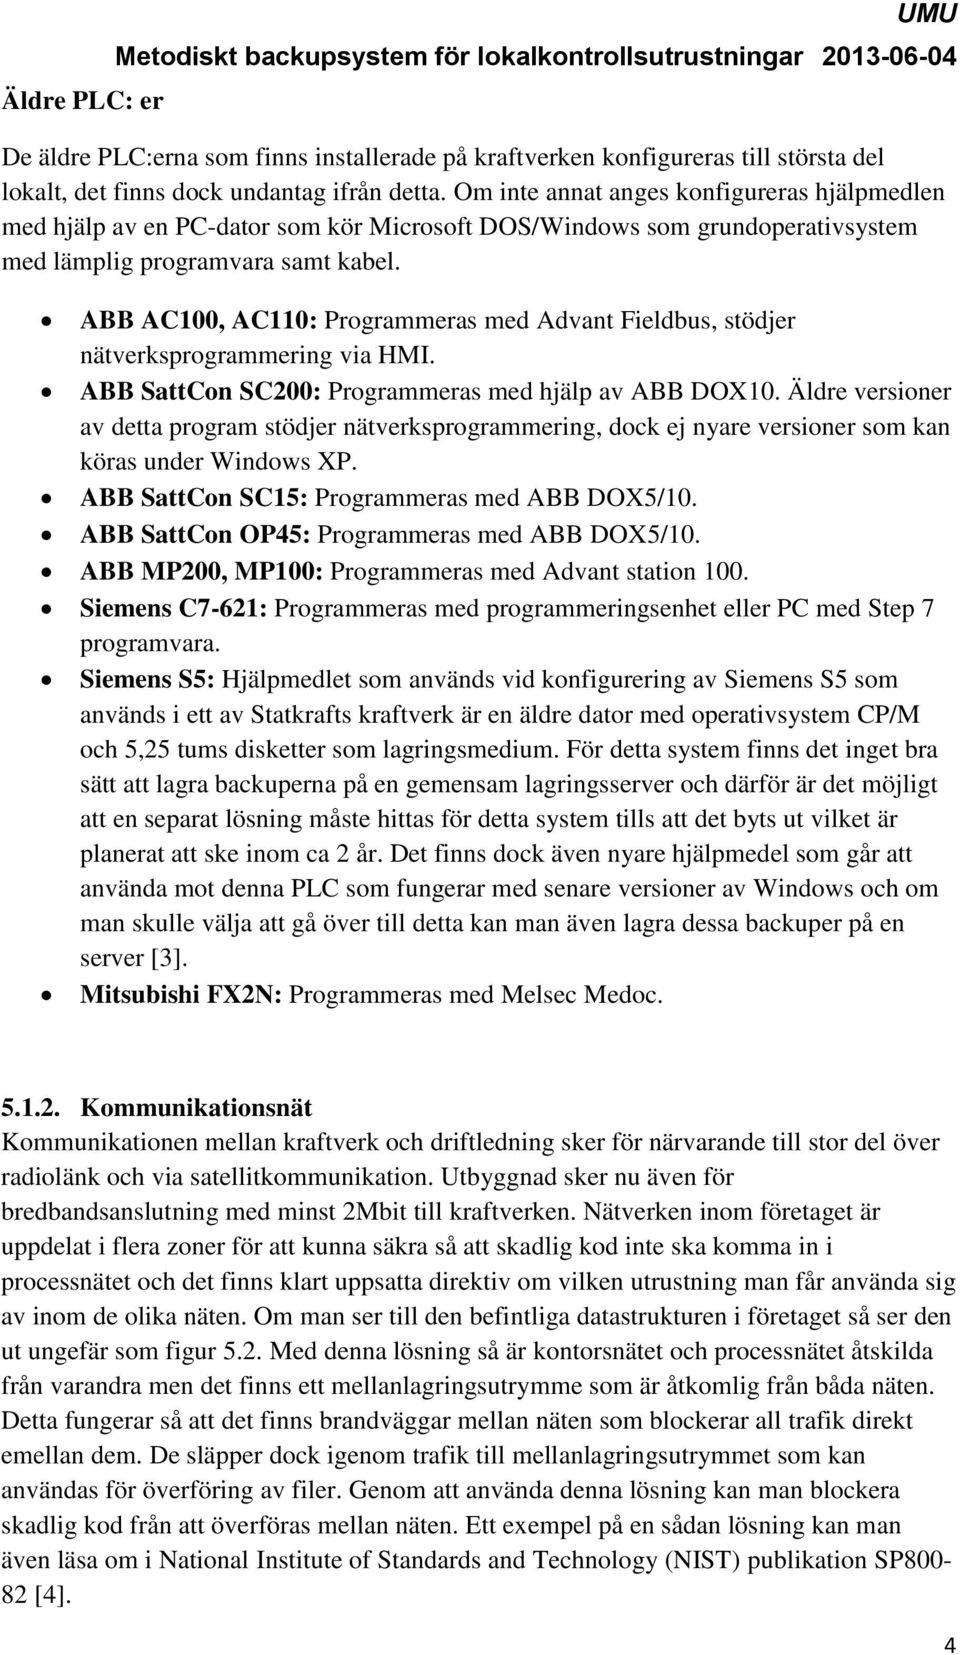 ABB AC100, AC110: Programmeras med Advant Fieldbus, stödjer nätverksprogrammering via HMI. ABB SattCon SC200: Programmeras med hjälp av ABB DOX10.